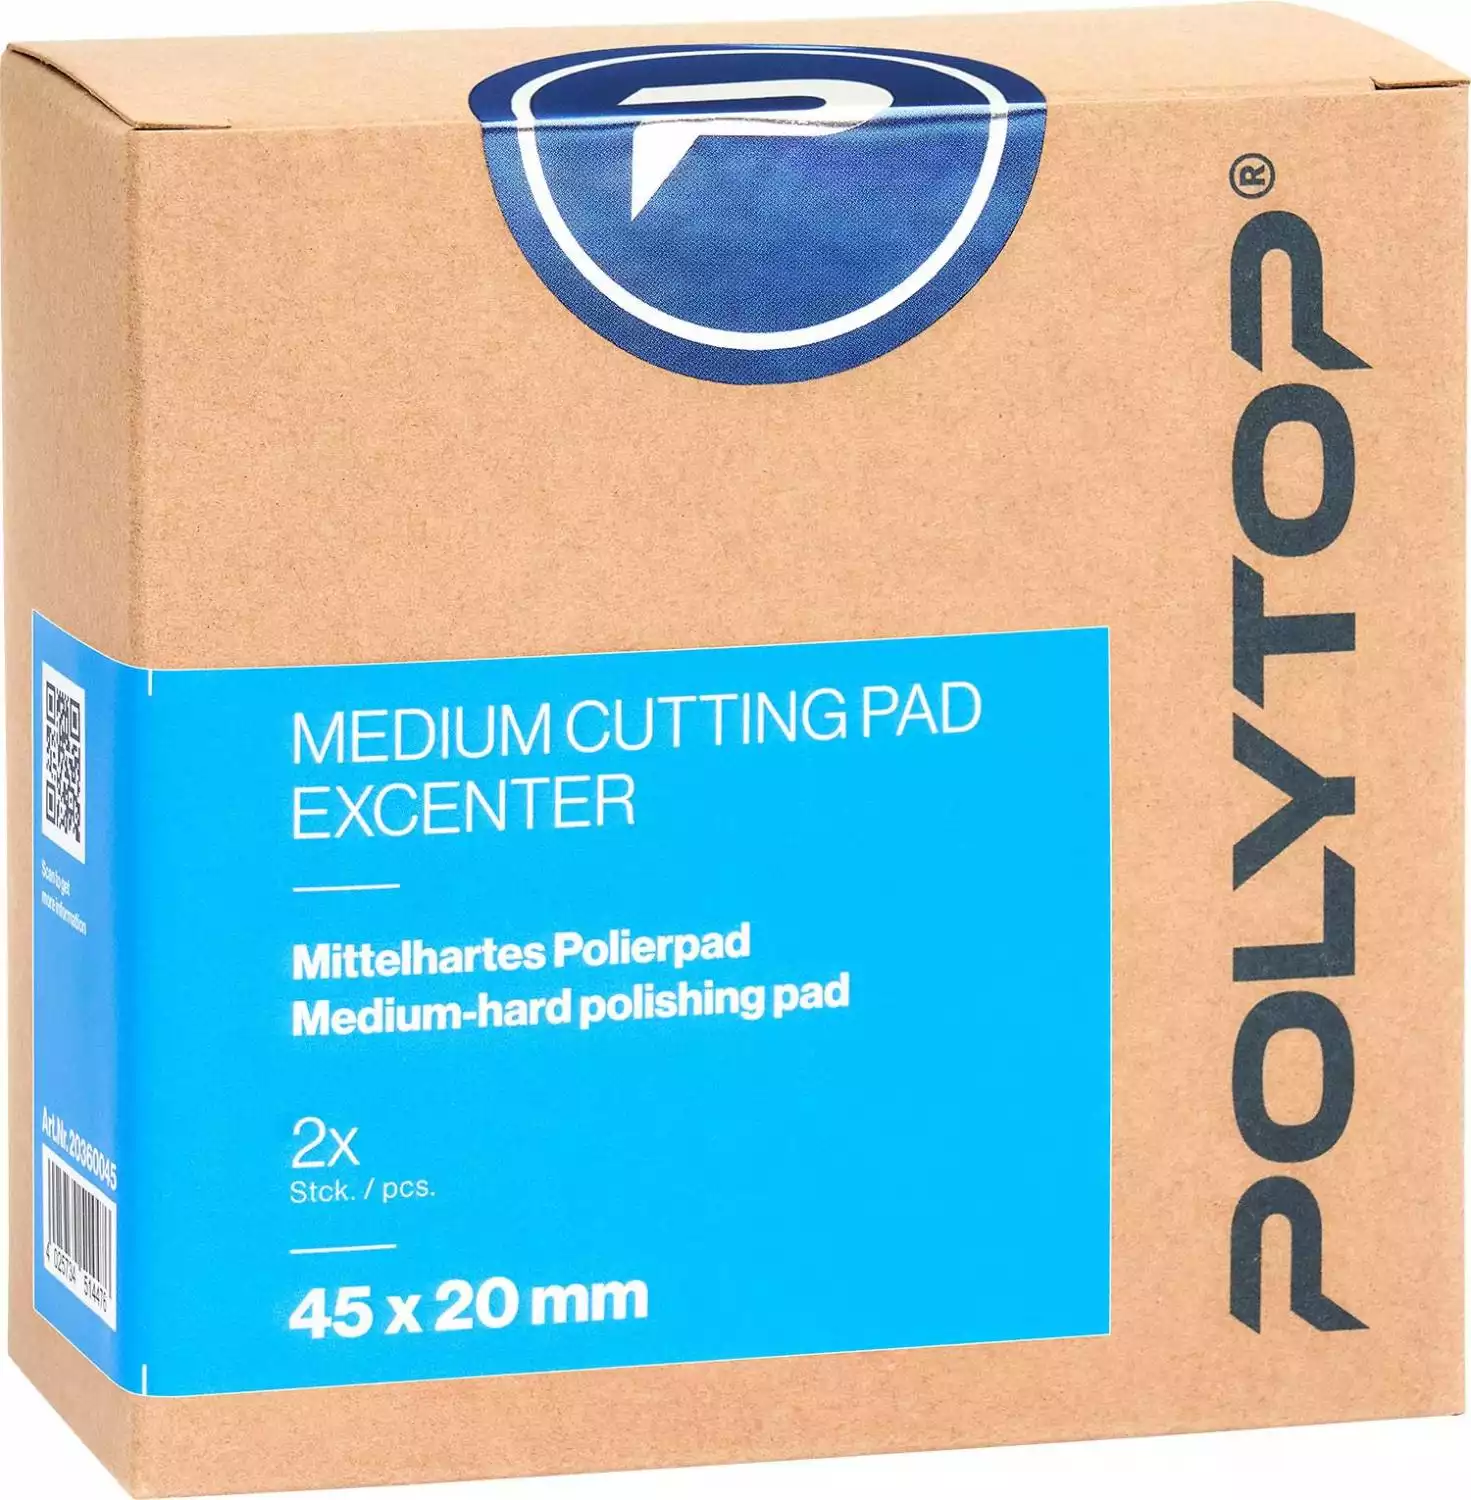 Medium Cutting Pad blau Excenter 45 x 20 mm, 2er Pack